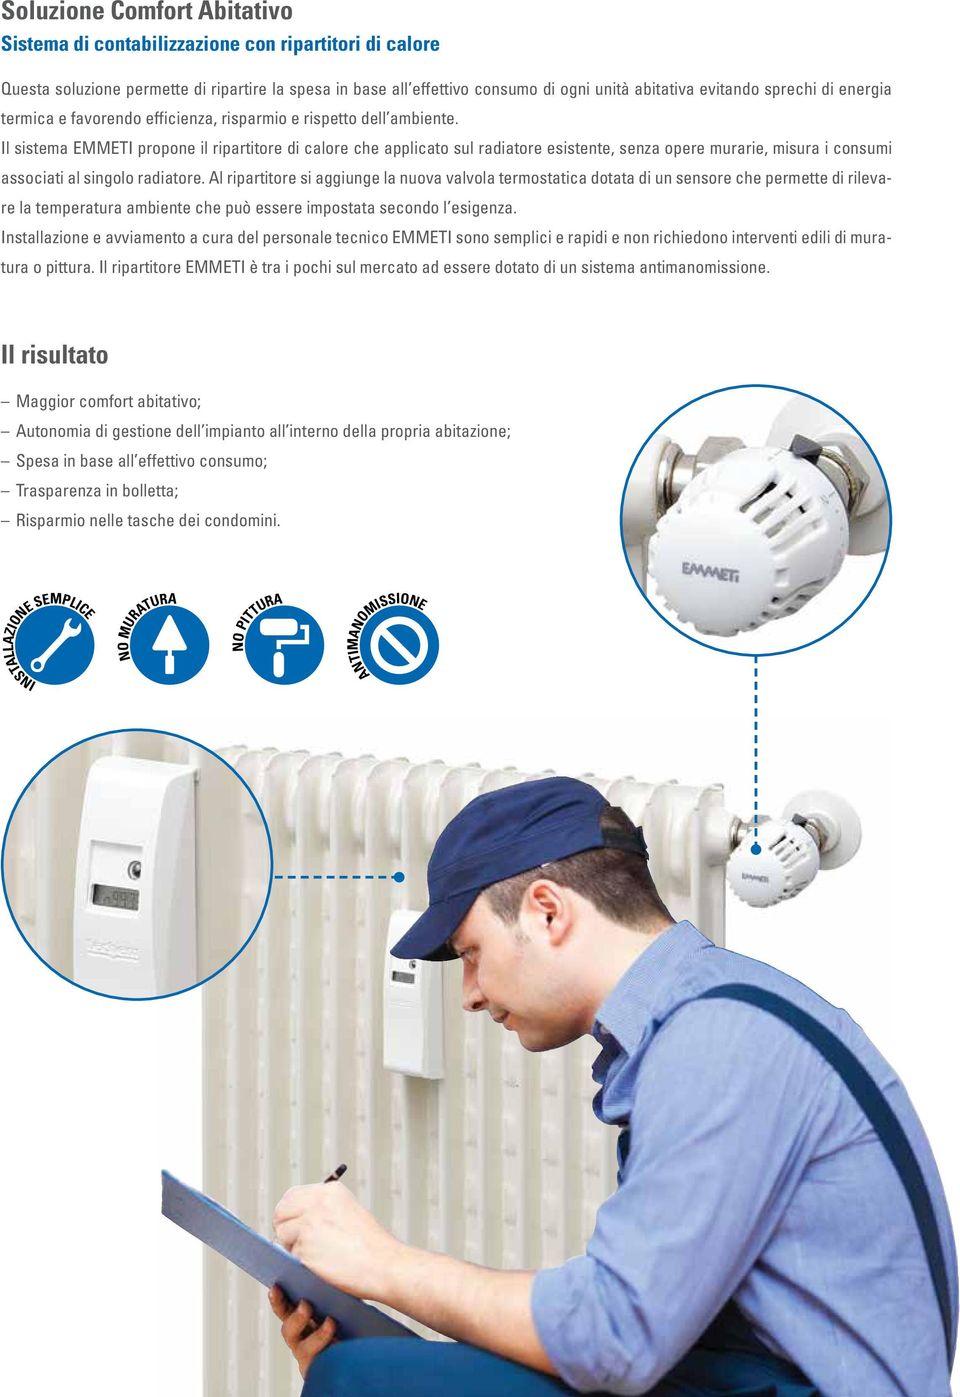 Il sistema EMMETI propone il ripartitore di calore che applicato sul radiatore esistente, senza opere murarie, misura i consumi associati al singolo radiatore.